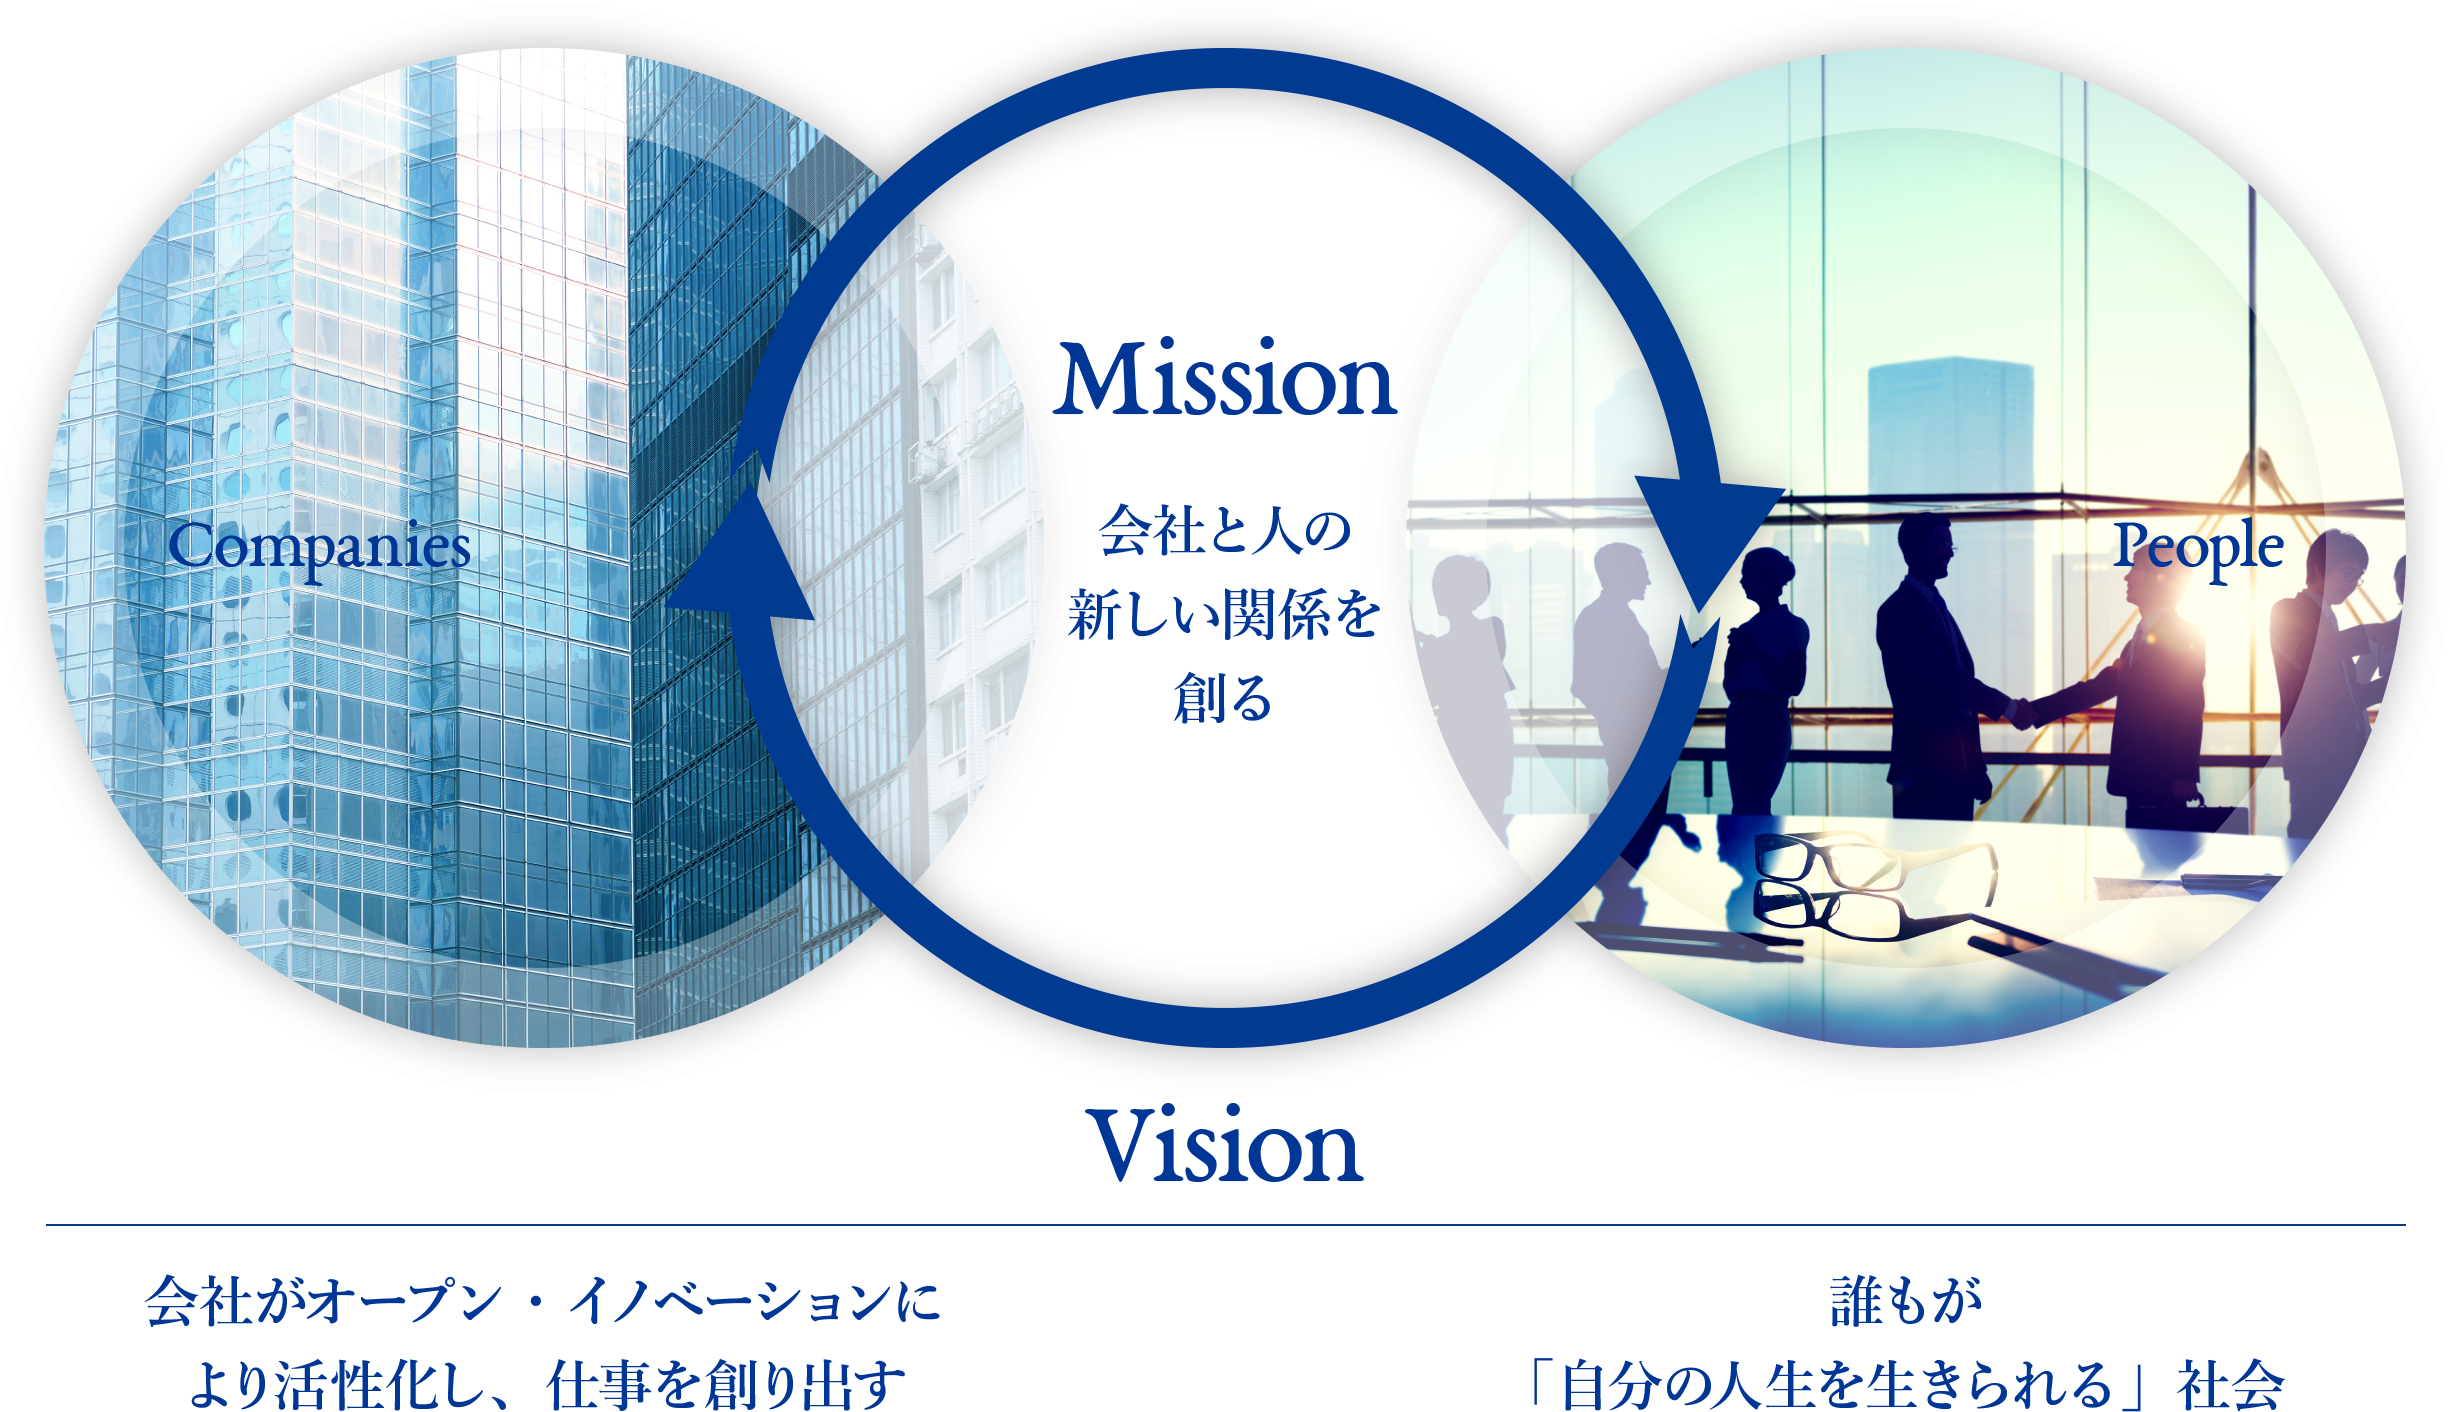 ミッション：会社と人の新しい関係を創る / ビジョン：会社がオープン・イノベーションにより活性化し、仕事を創り出す。誰もが「自分の人生を生きられる」社会